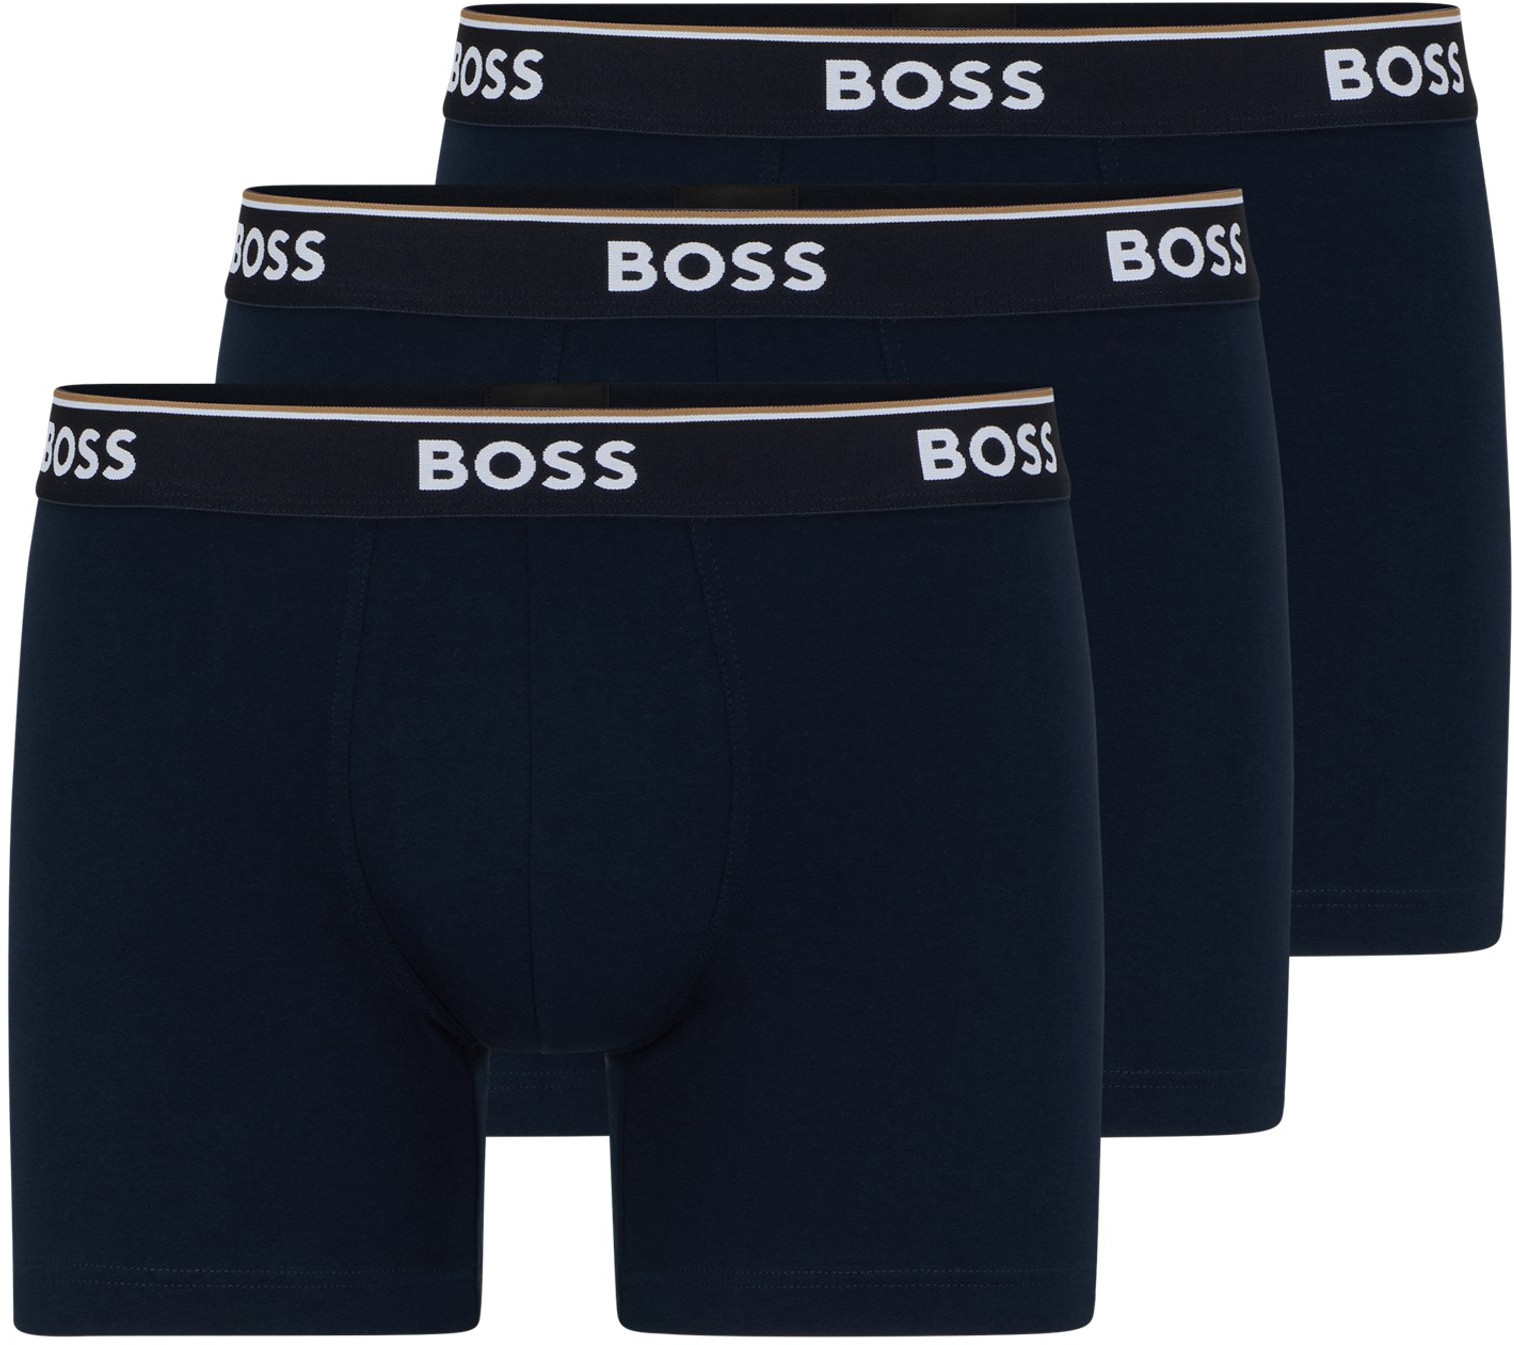 Hugo Boss 3 PACK - pánske boxerky BOSS 50475282-480 L